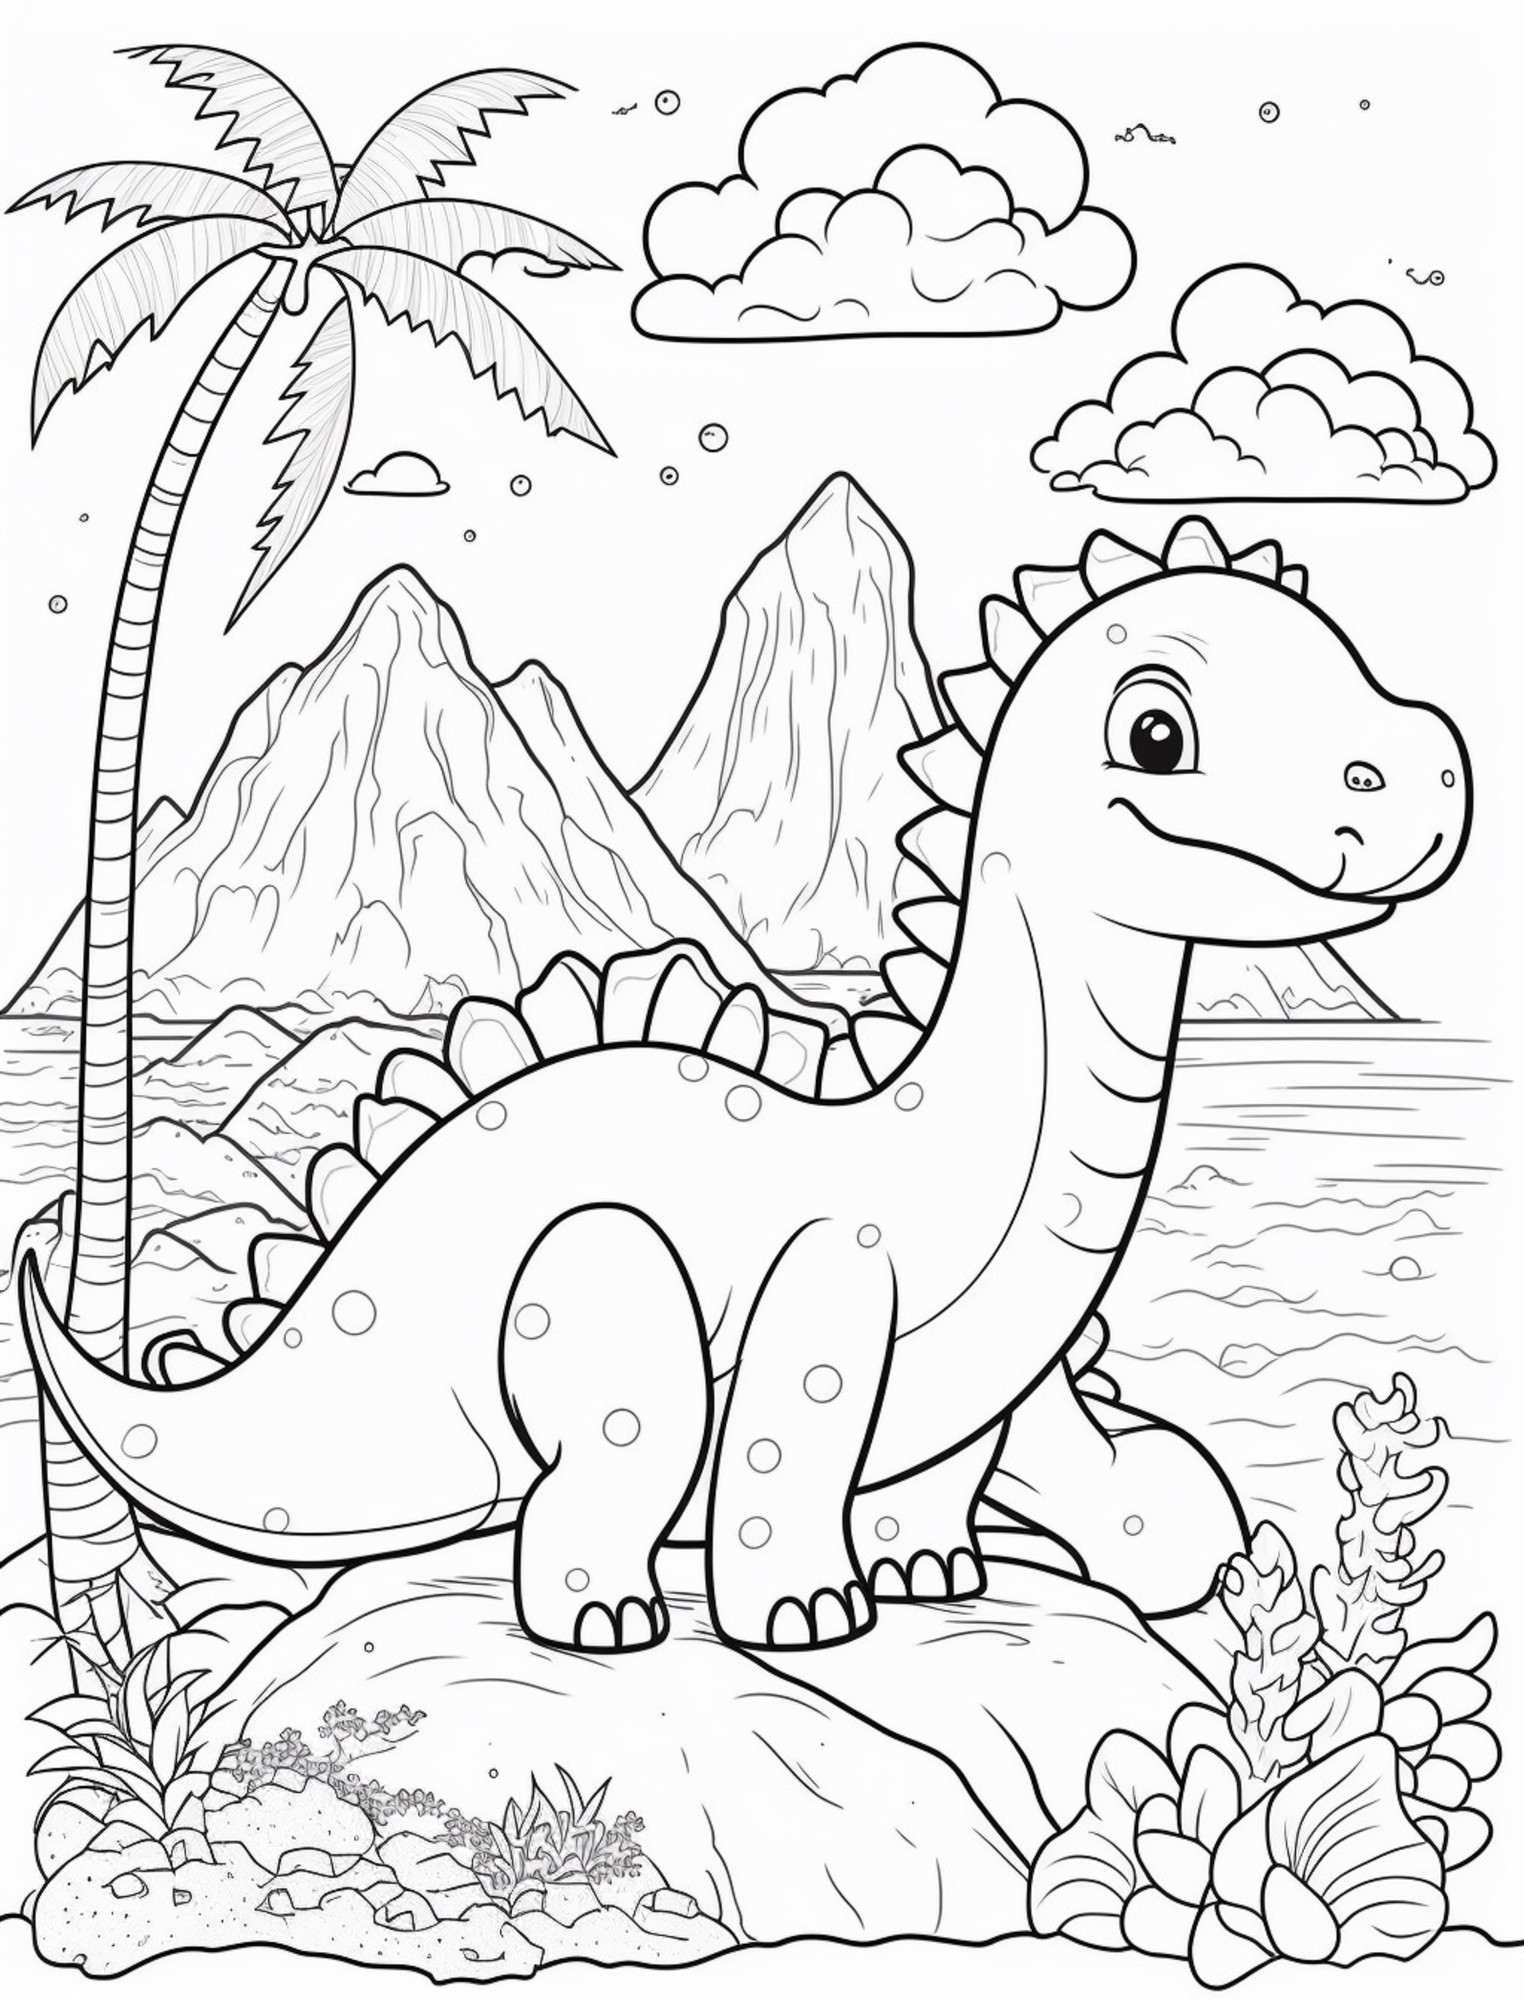 Раскраска для детей: динозавр на острове на фоне гор и пальмы